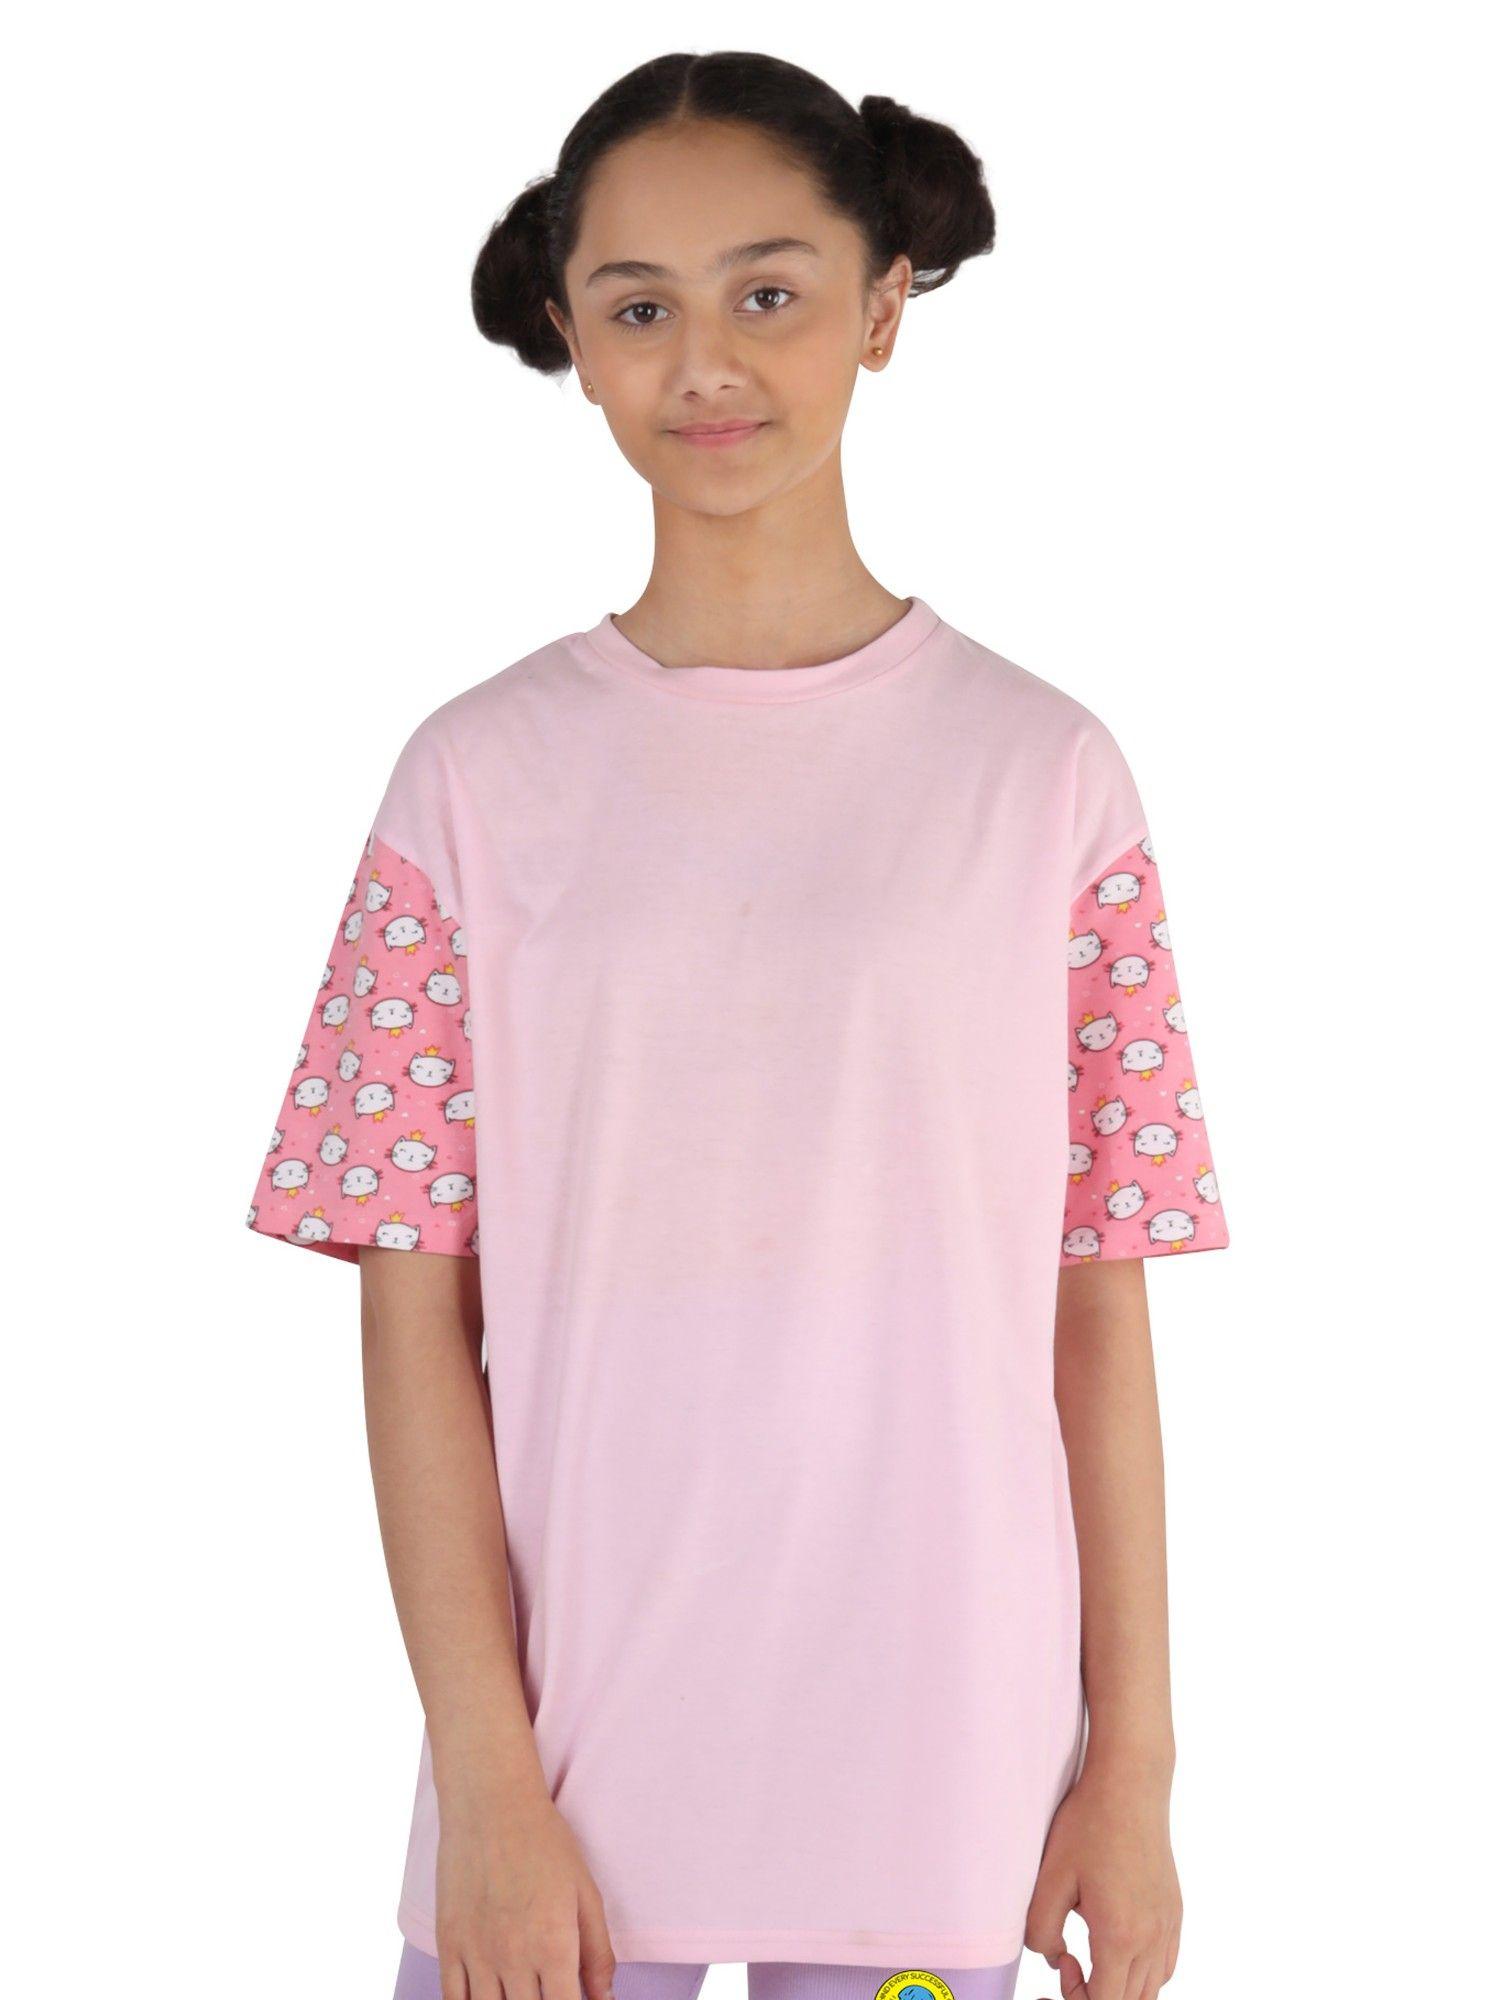 Girls Pink T-Shirt Printed